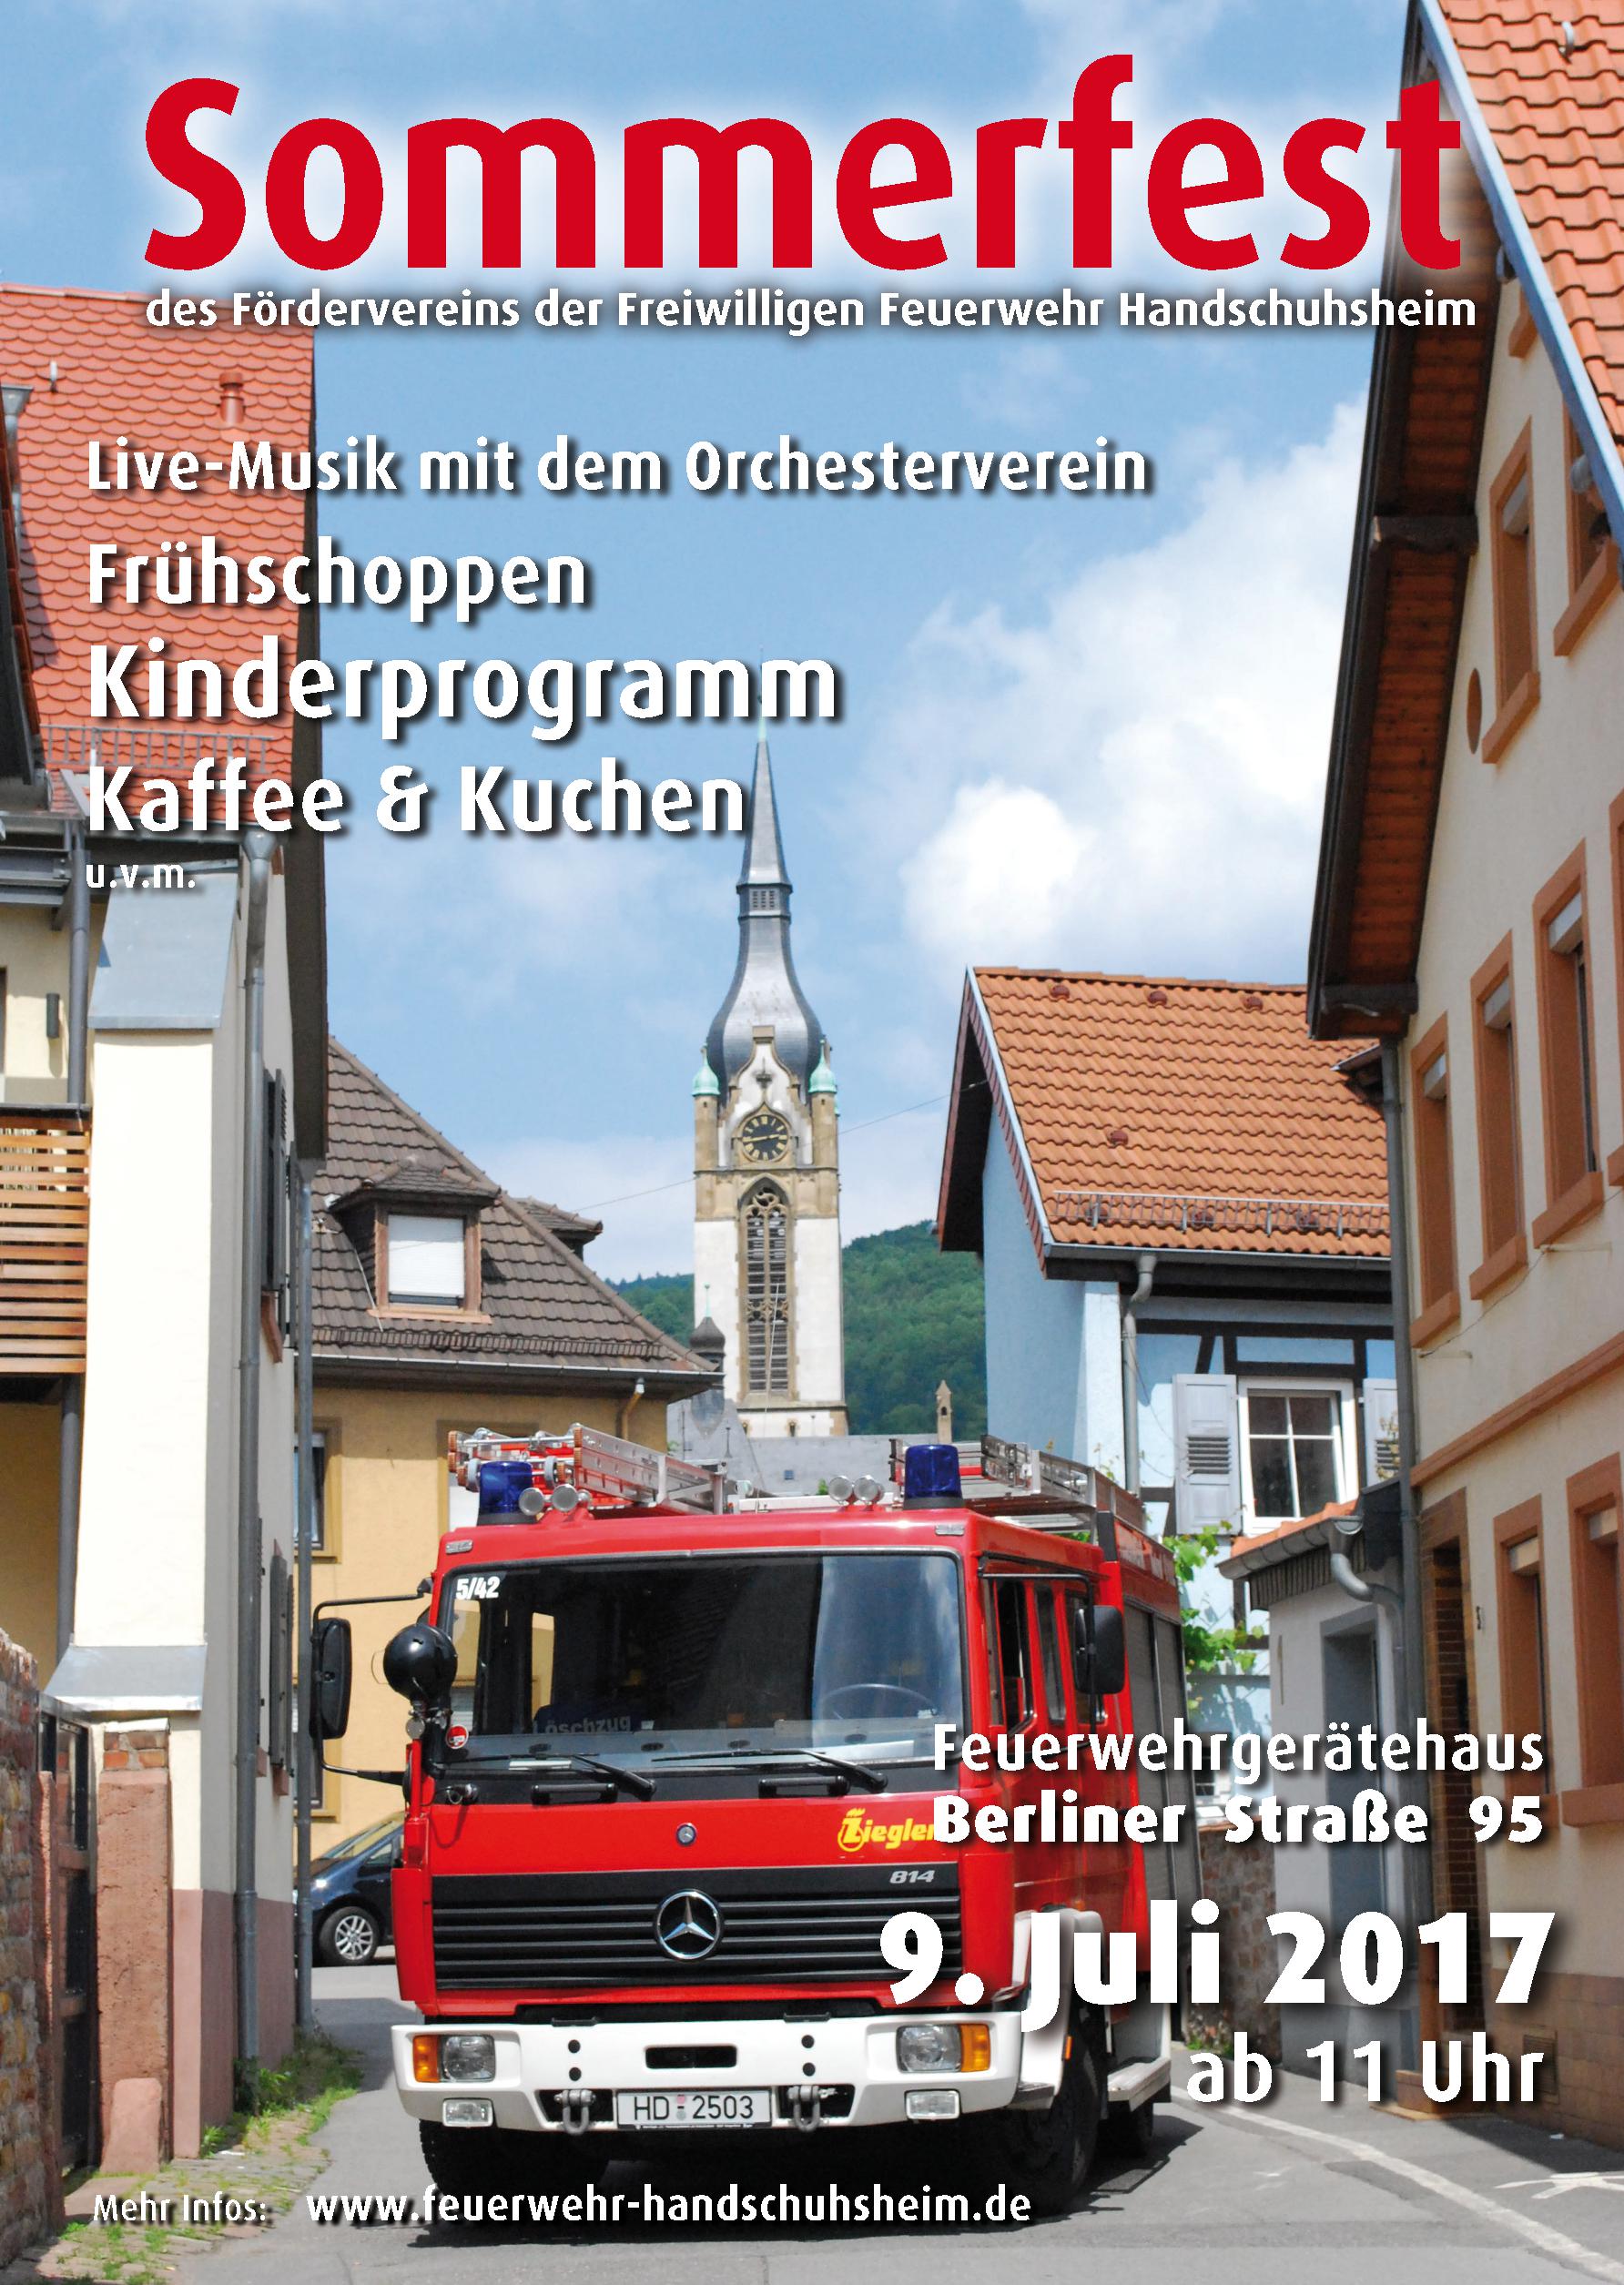 Plakat für das Sommerfest 2017 der freiwilligen Feuerwehr Handschuhsheim